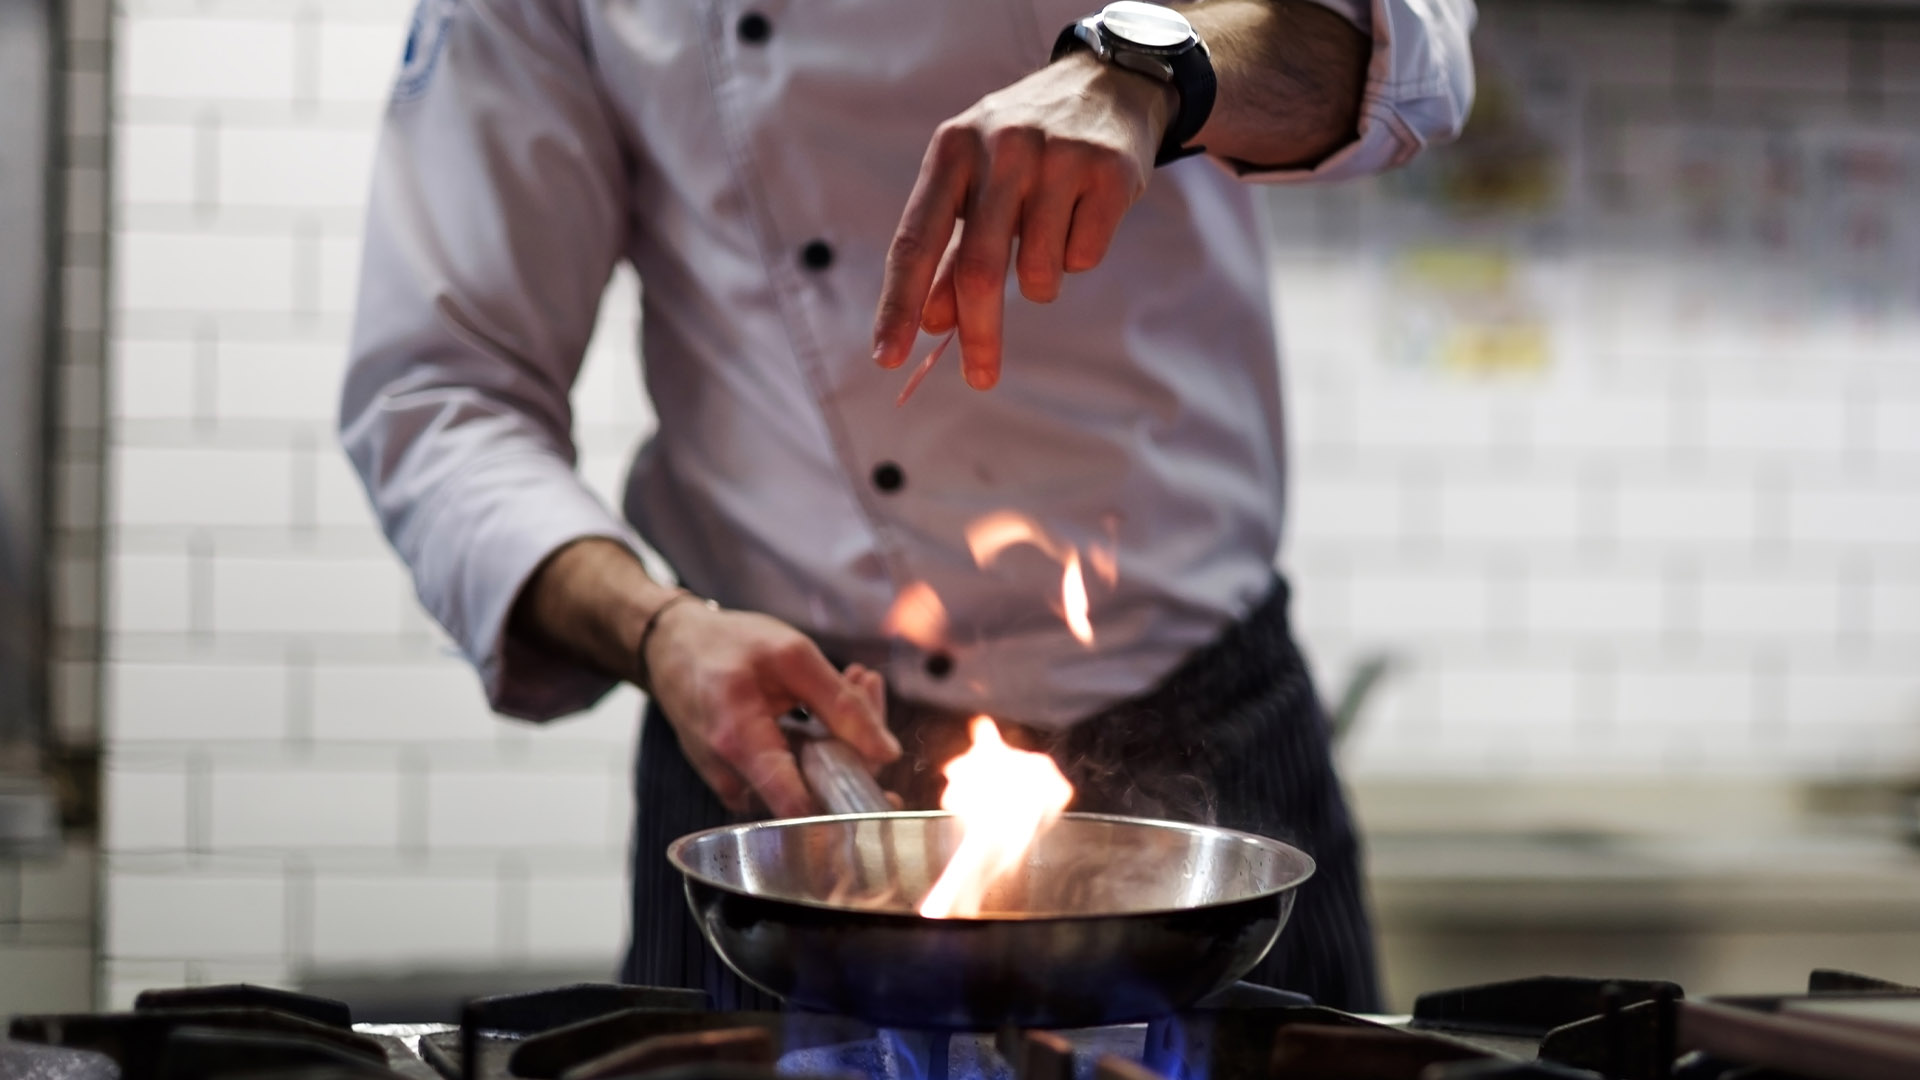 15 užitočných rád od šéfkuchárov, ktorými vyšperkuješ svoje kulinárske zručnosti